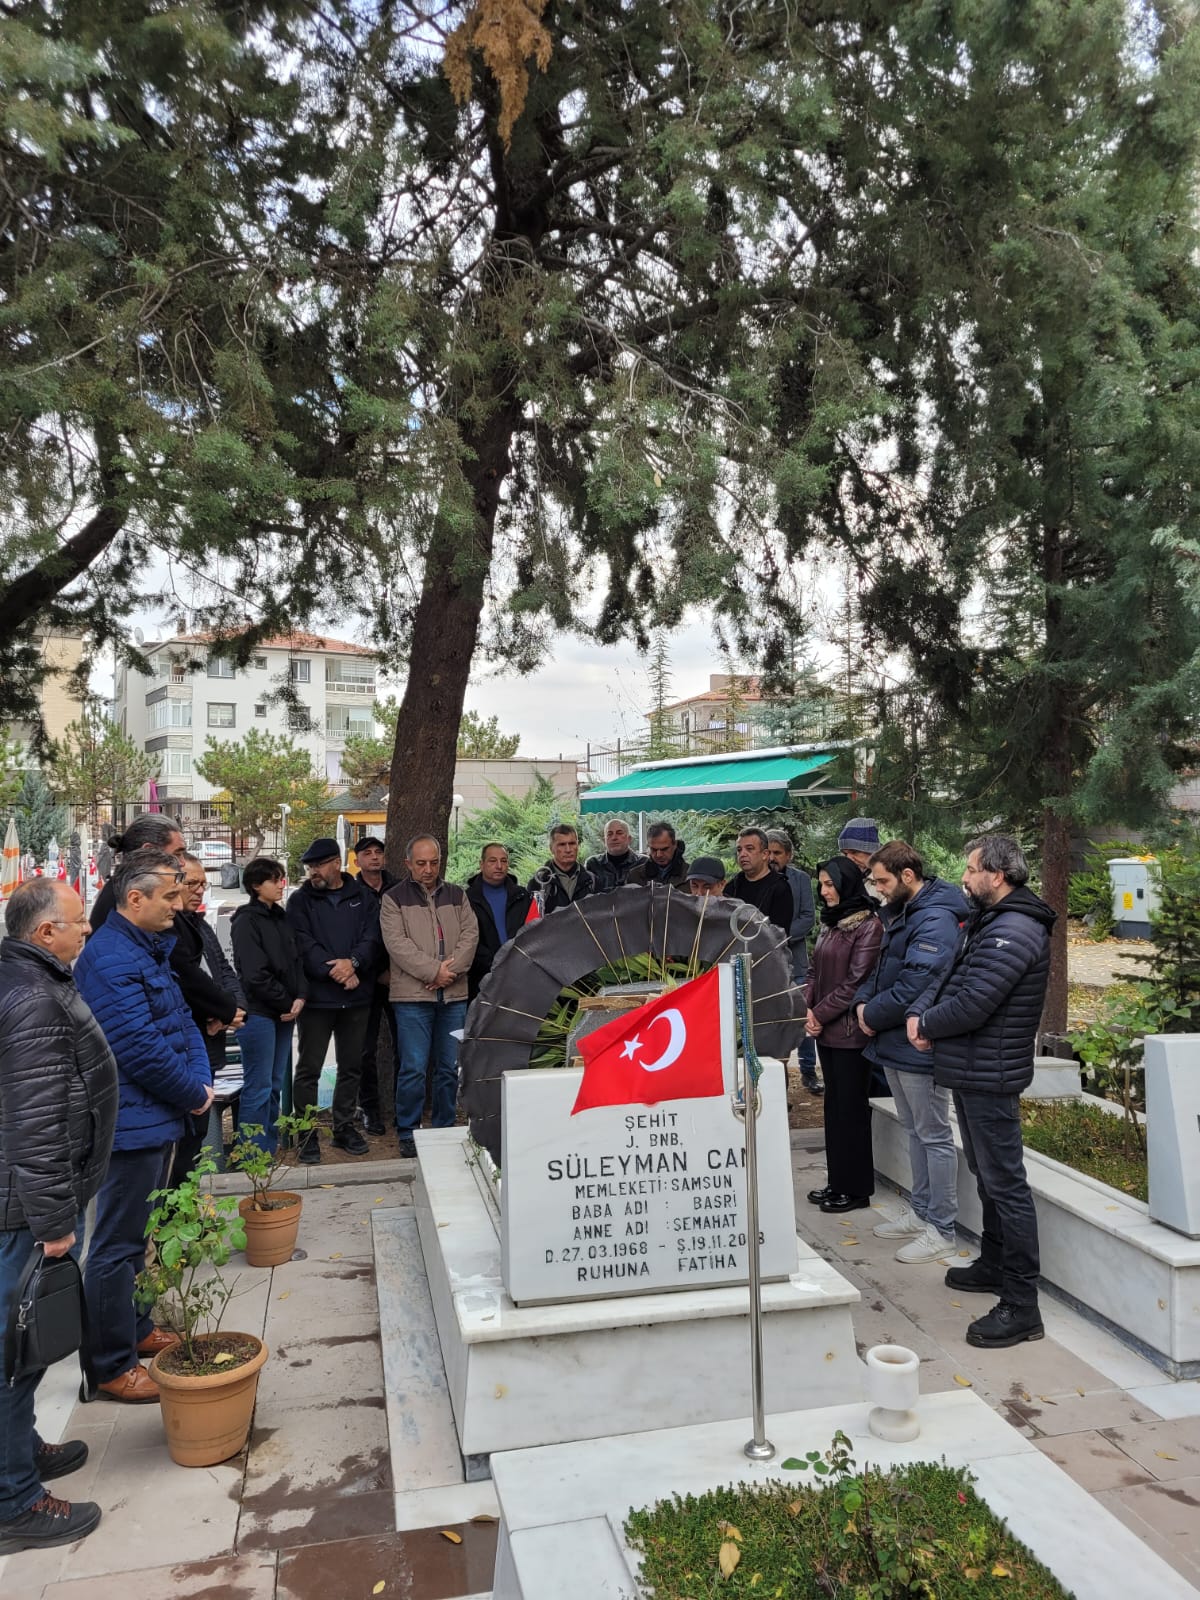 322 Şht.J.Bnb. Süleyman CAN Anma Töreni (19.11.2022)